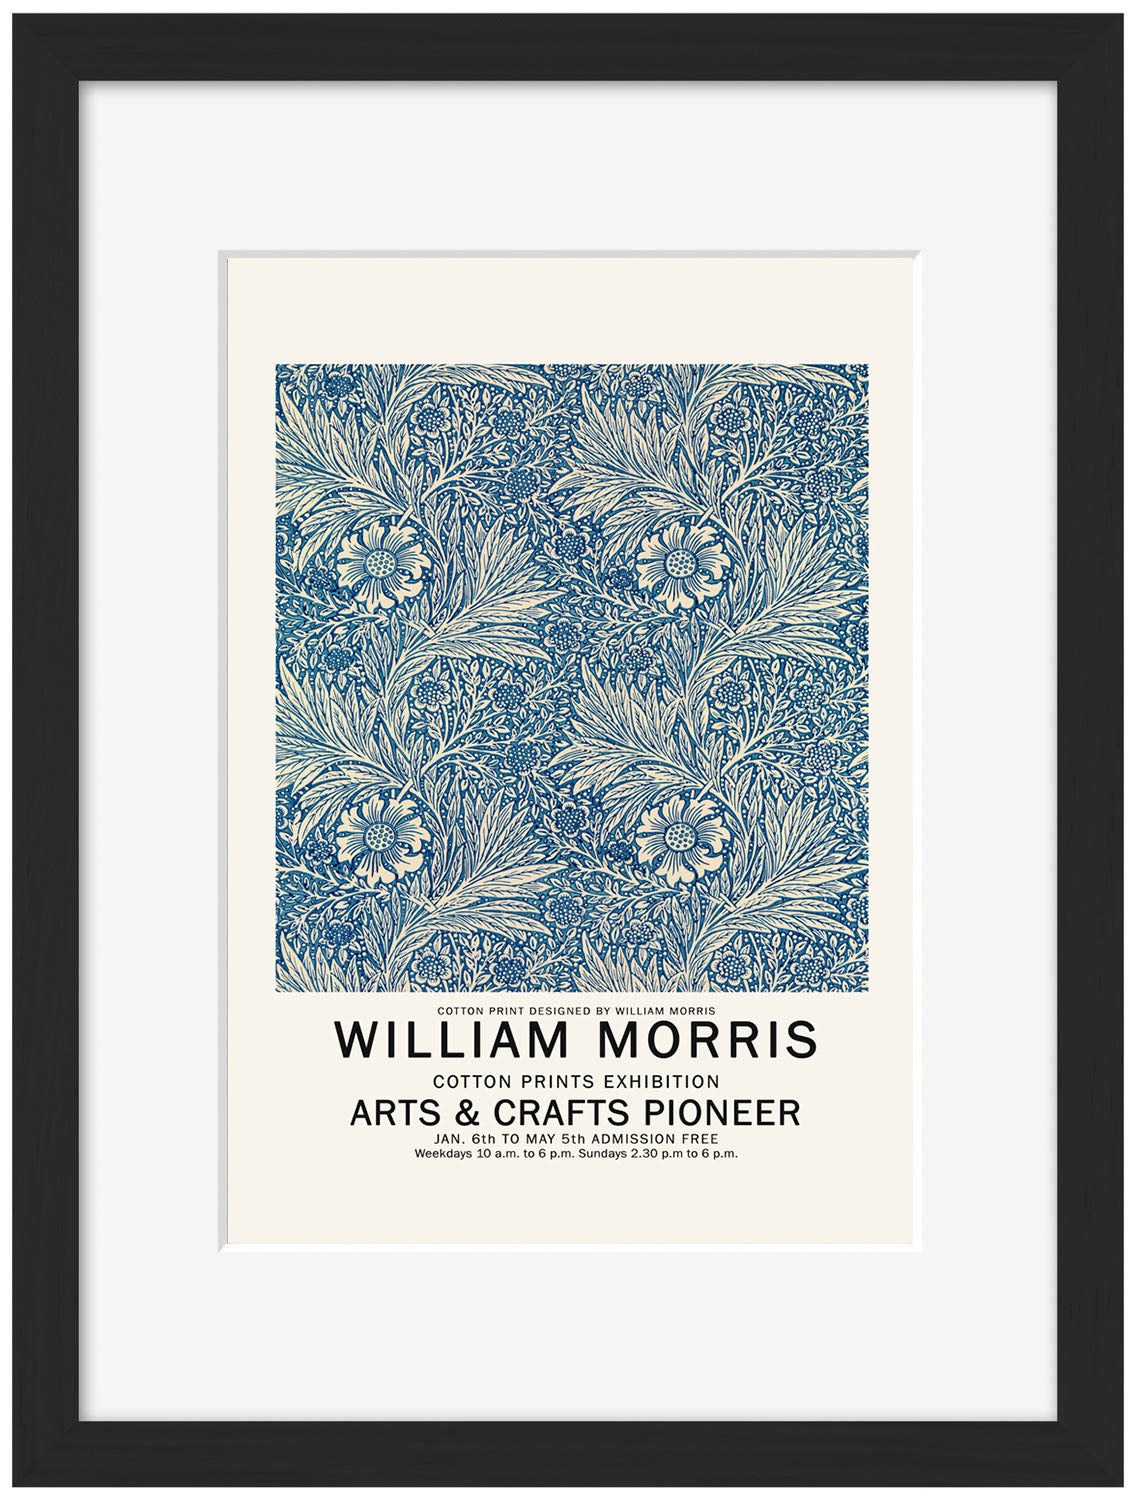 William Morris 12-expositions, print-Framed Print-30 x 40 cm-BLUE SHAKER